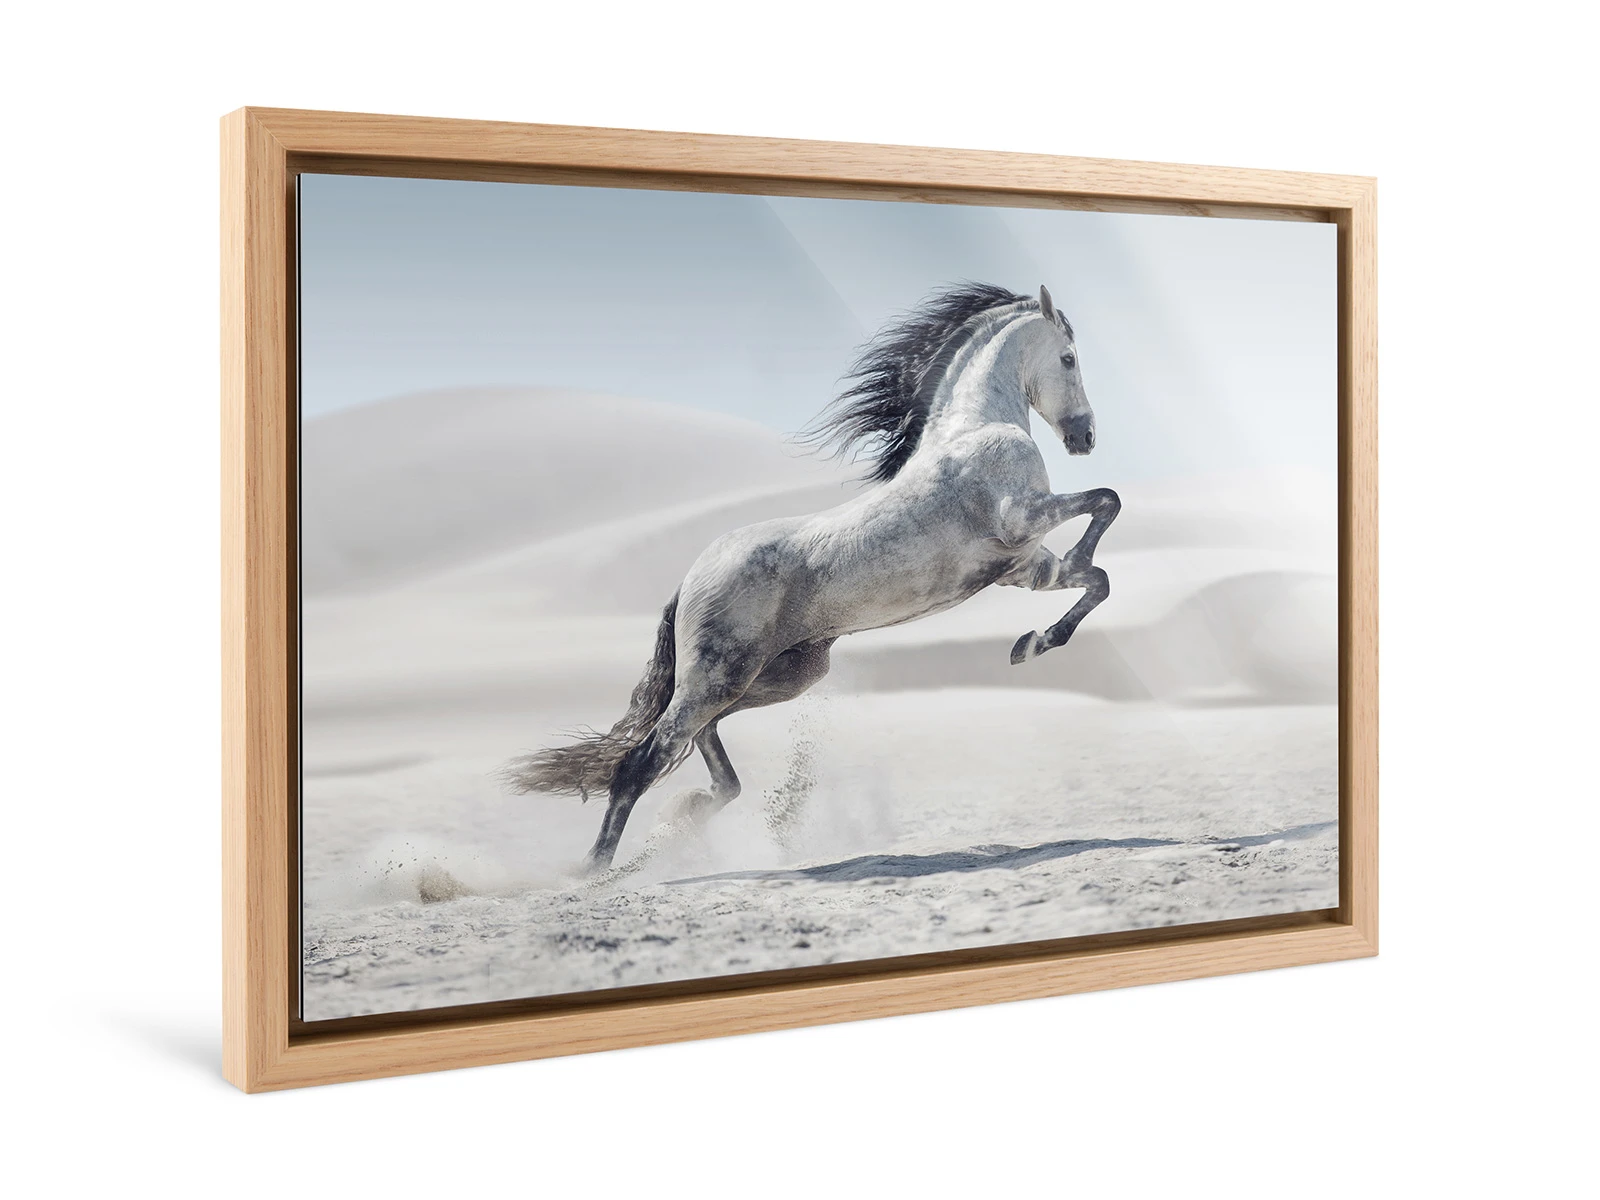 A white horse jumps in a desert landscape framed in a Floater Frame.